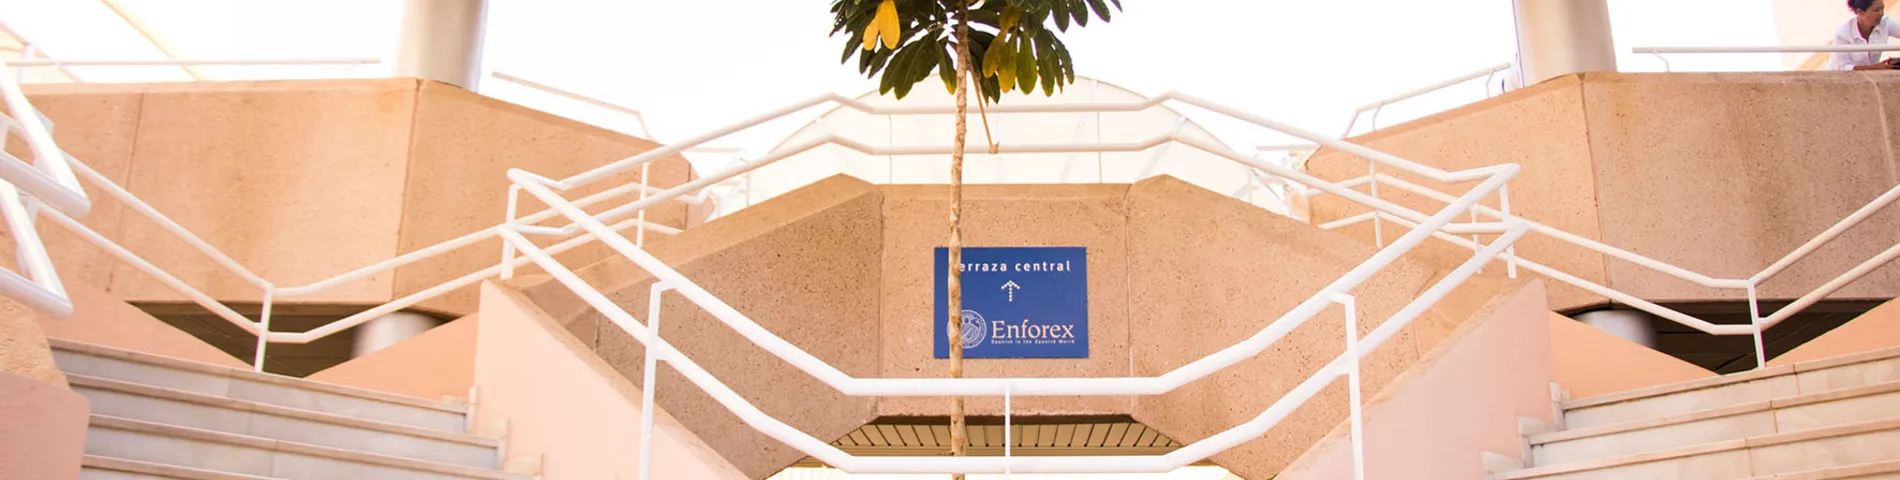 Enforex International Summer Centre - Centro afbeelding 1